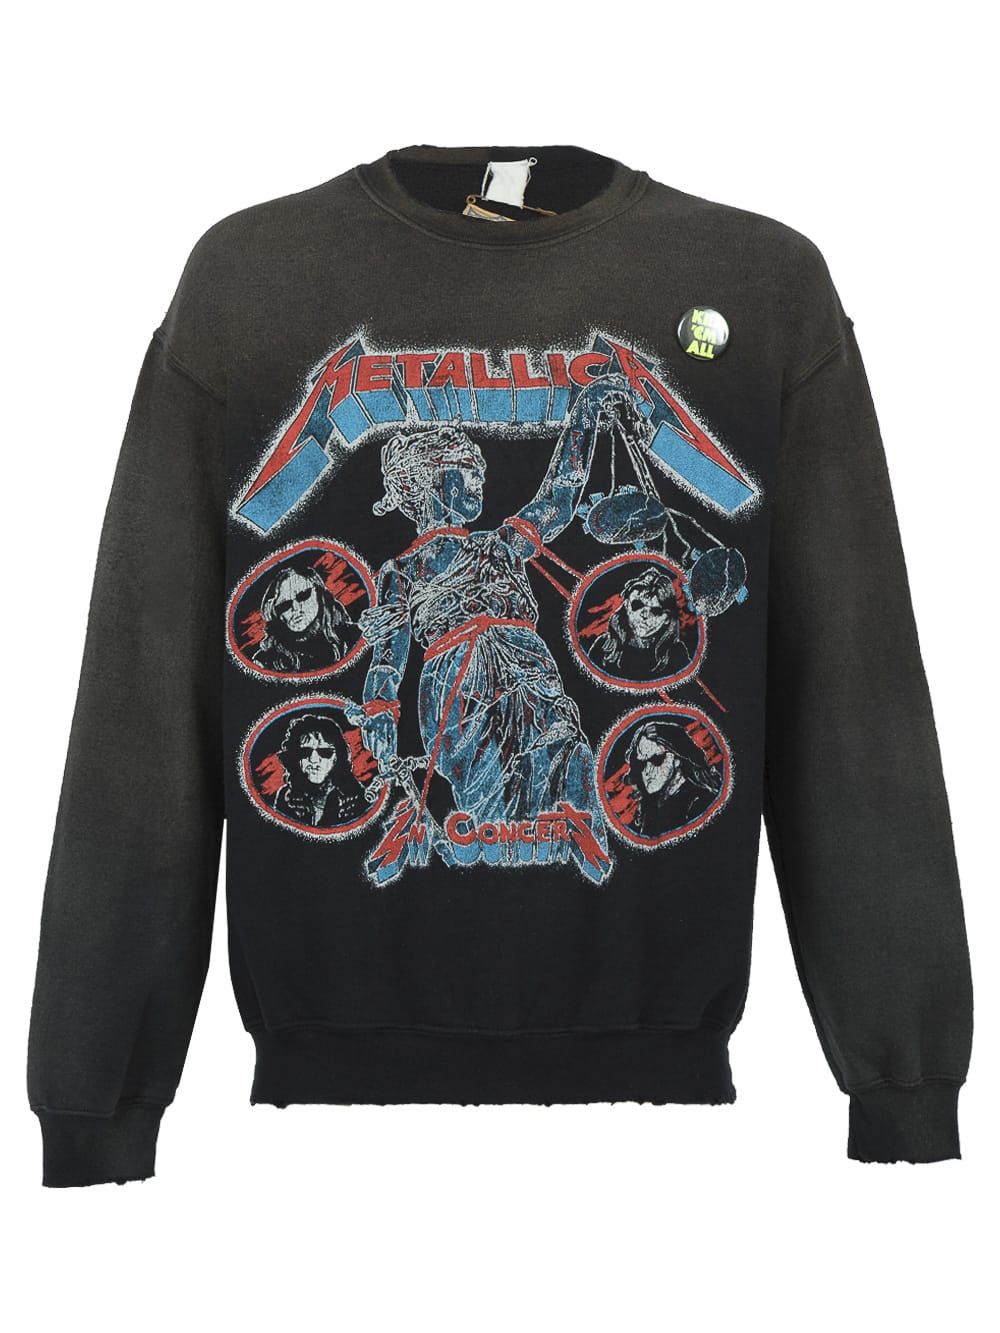 Metallica In Concert Crew Neck Sweatshirt | The Webster